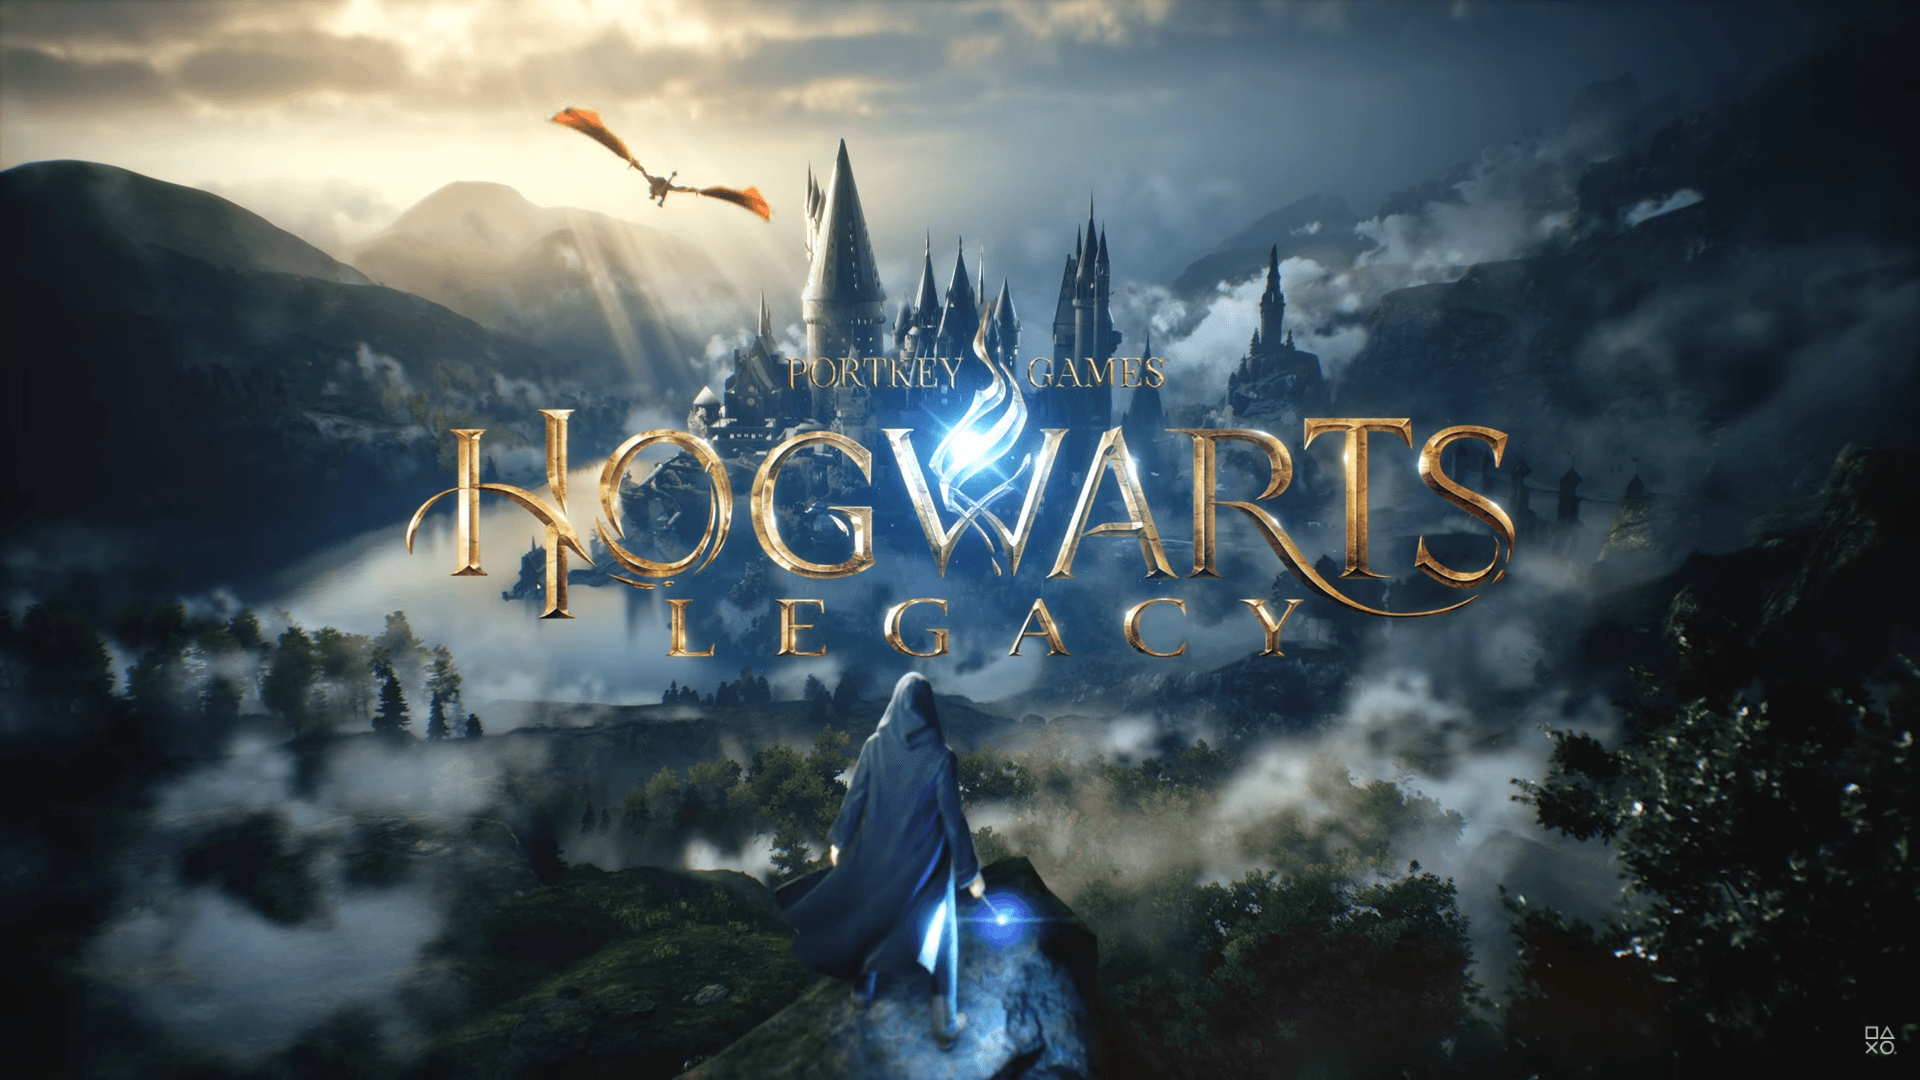 Harry Potter Hogwarts Legacy – Hệ thống trò chơi mới đang chờ đón bạn! Bạn sẽ được đắm mình vào một thế giới phù thủy tuyệt vời, đi xuyên tâm hồn của nhân vật, khám phá những bí ẩn đầy kỳ thú. Hãy chuẩn bị cho mình những trải nghiệm tuyệt vời nhất và tận hưởng thế giới phù thủy của Harry Potter!